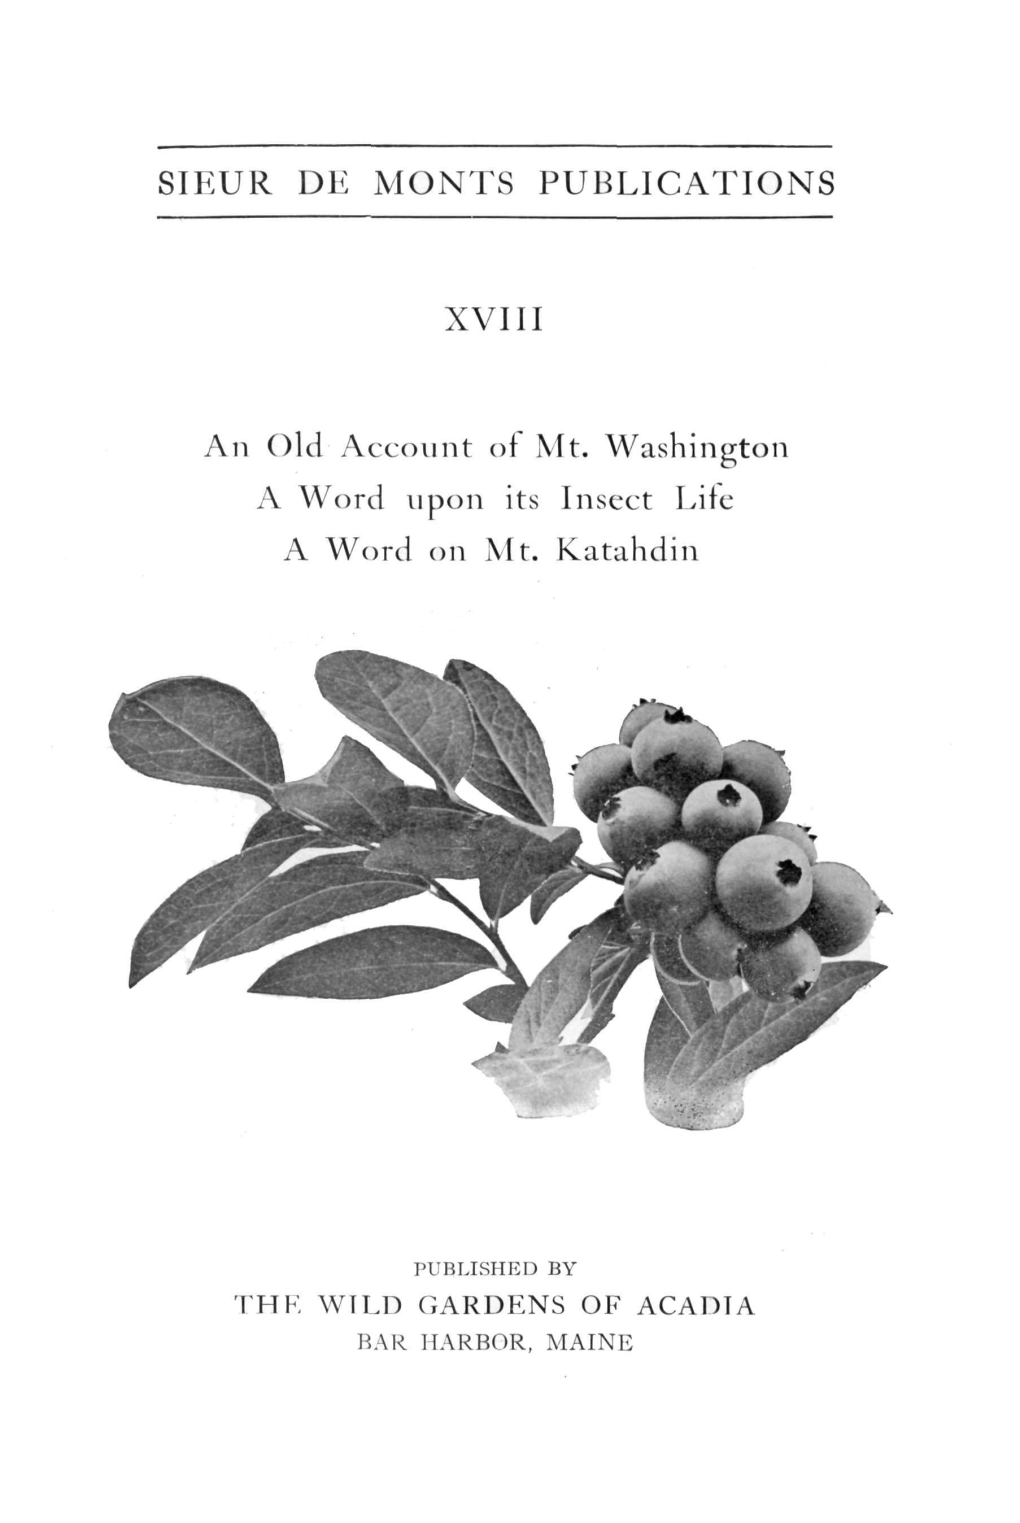 SIEUR DE MONTS PUBLICATIONS XVIII an Old Account of Mt